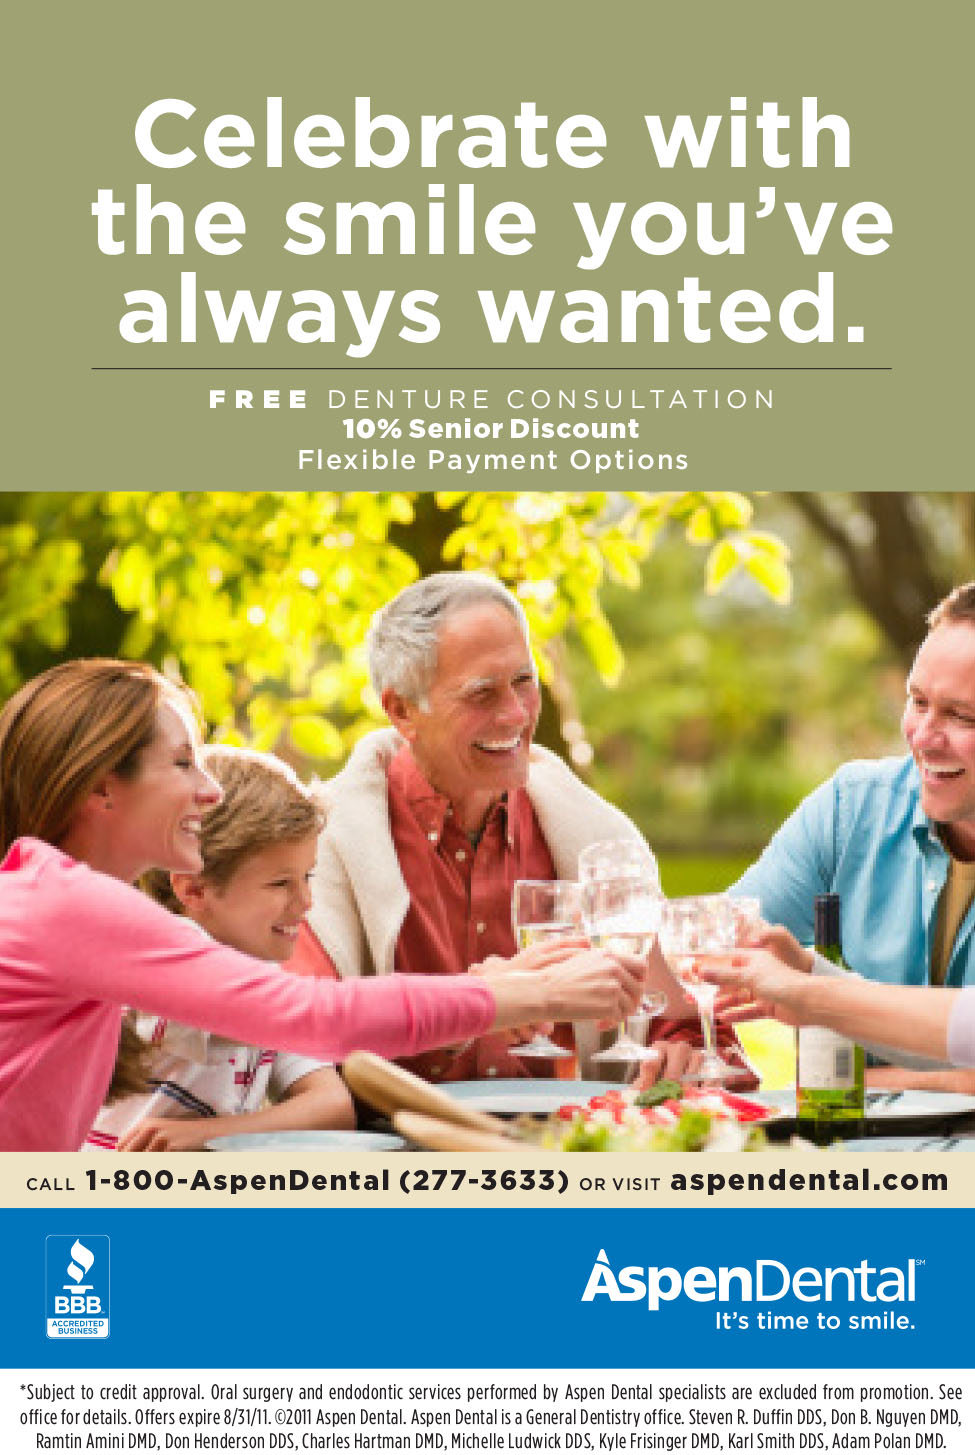 does aspen dental offer senior discounts? 2